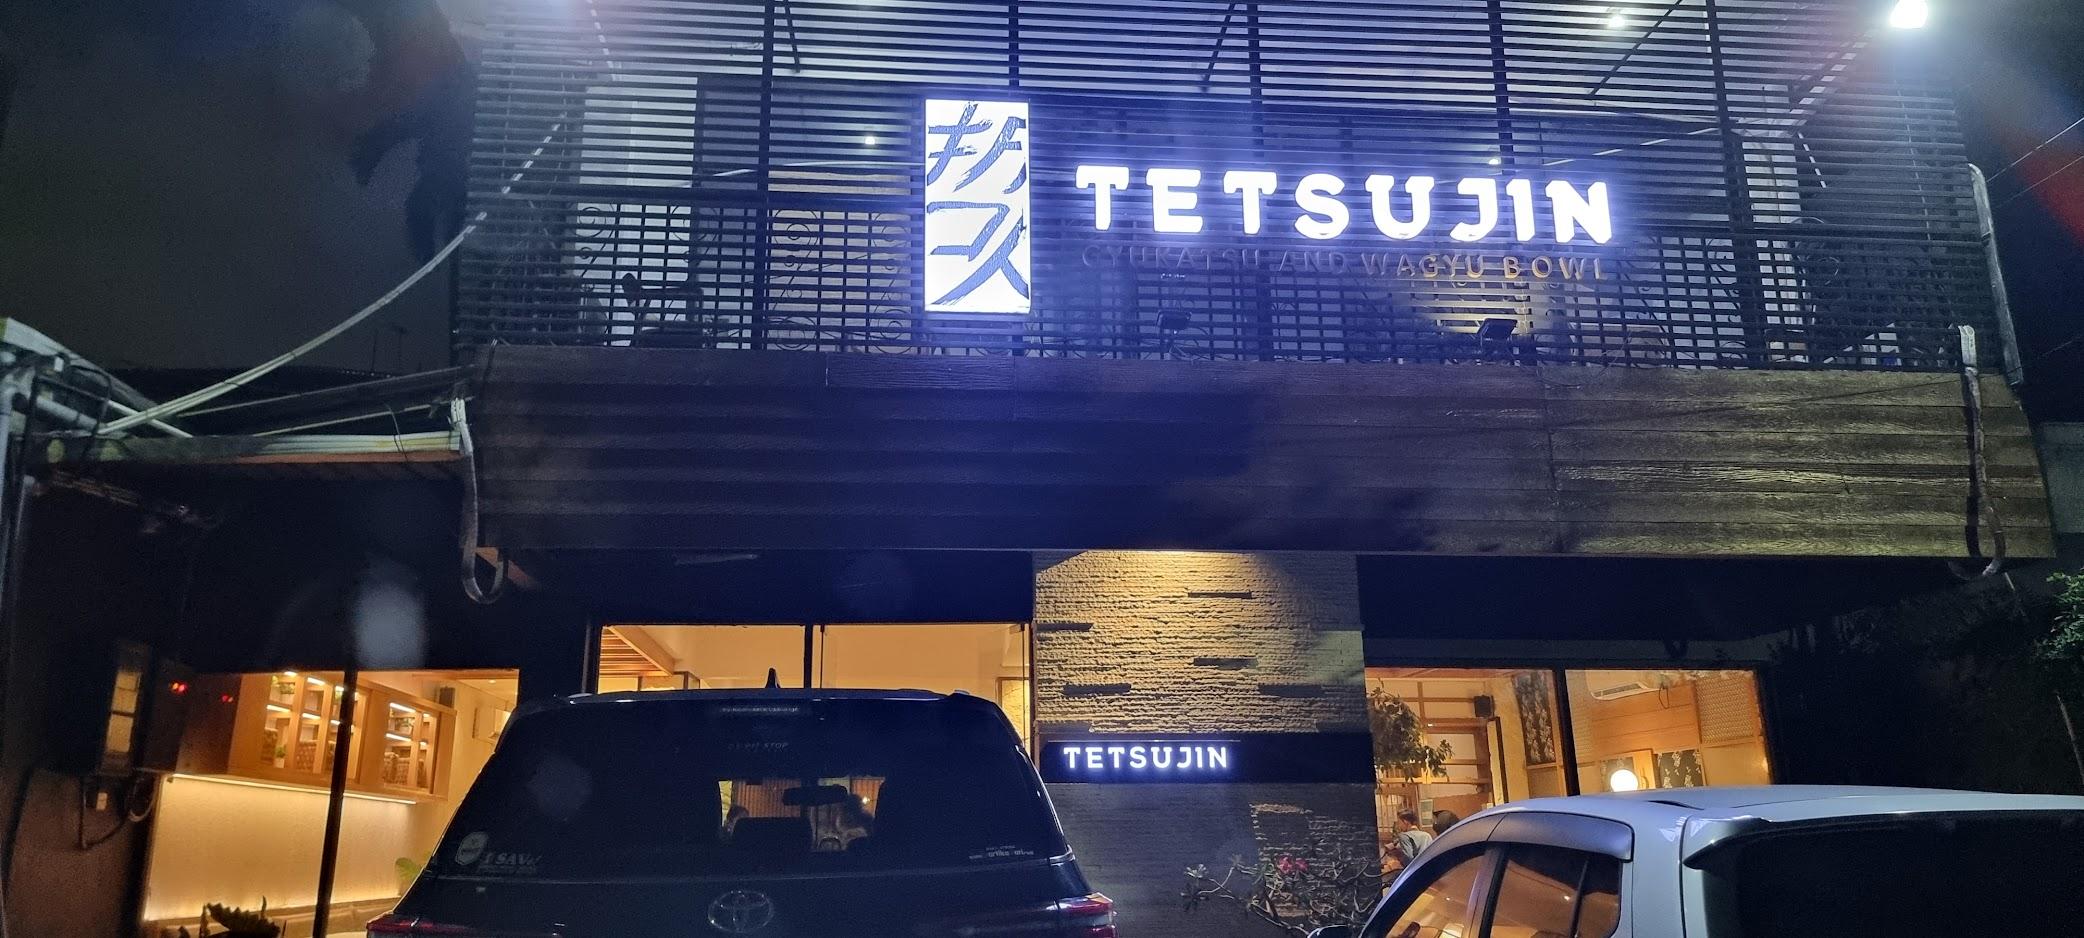 Tetsujin Gyukatsu & Wagyu Bowl - Surabaya review